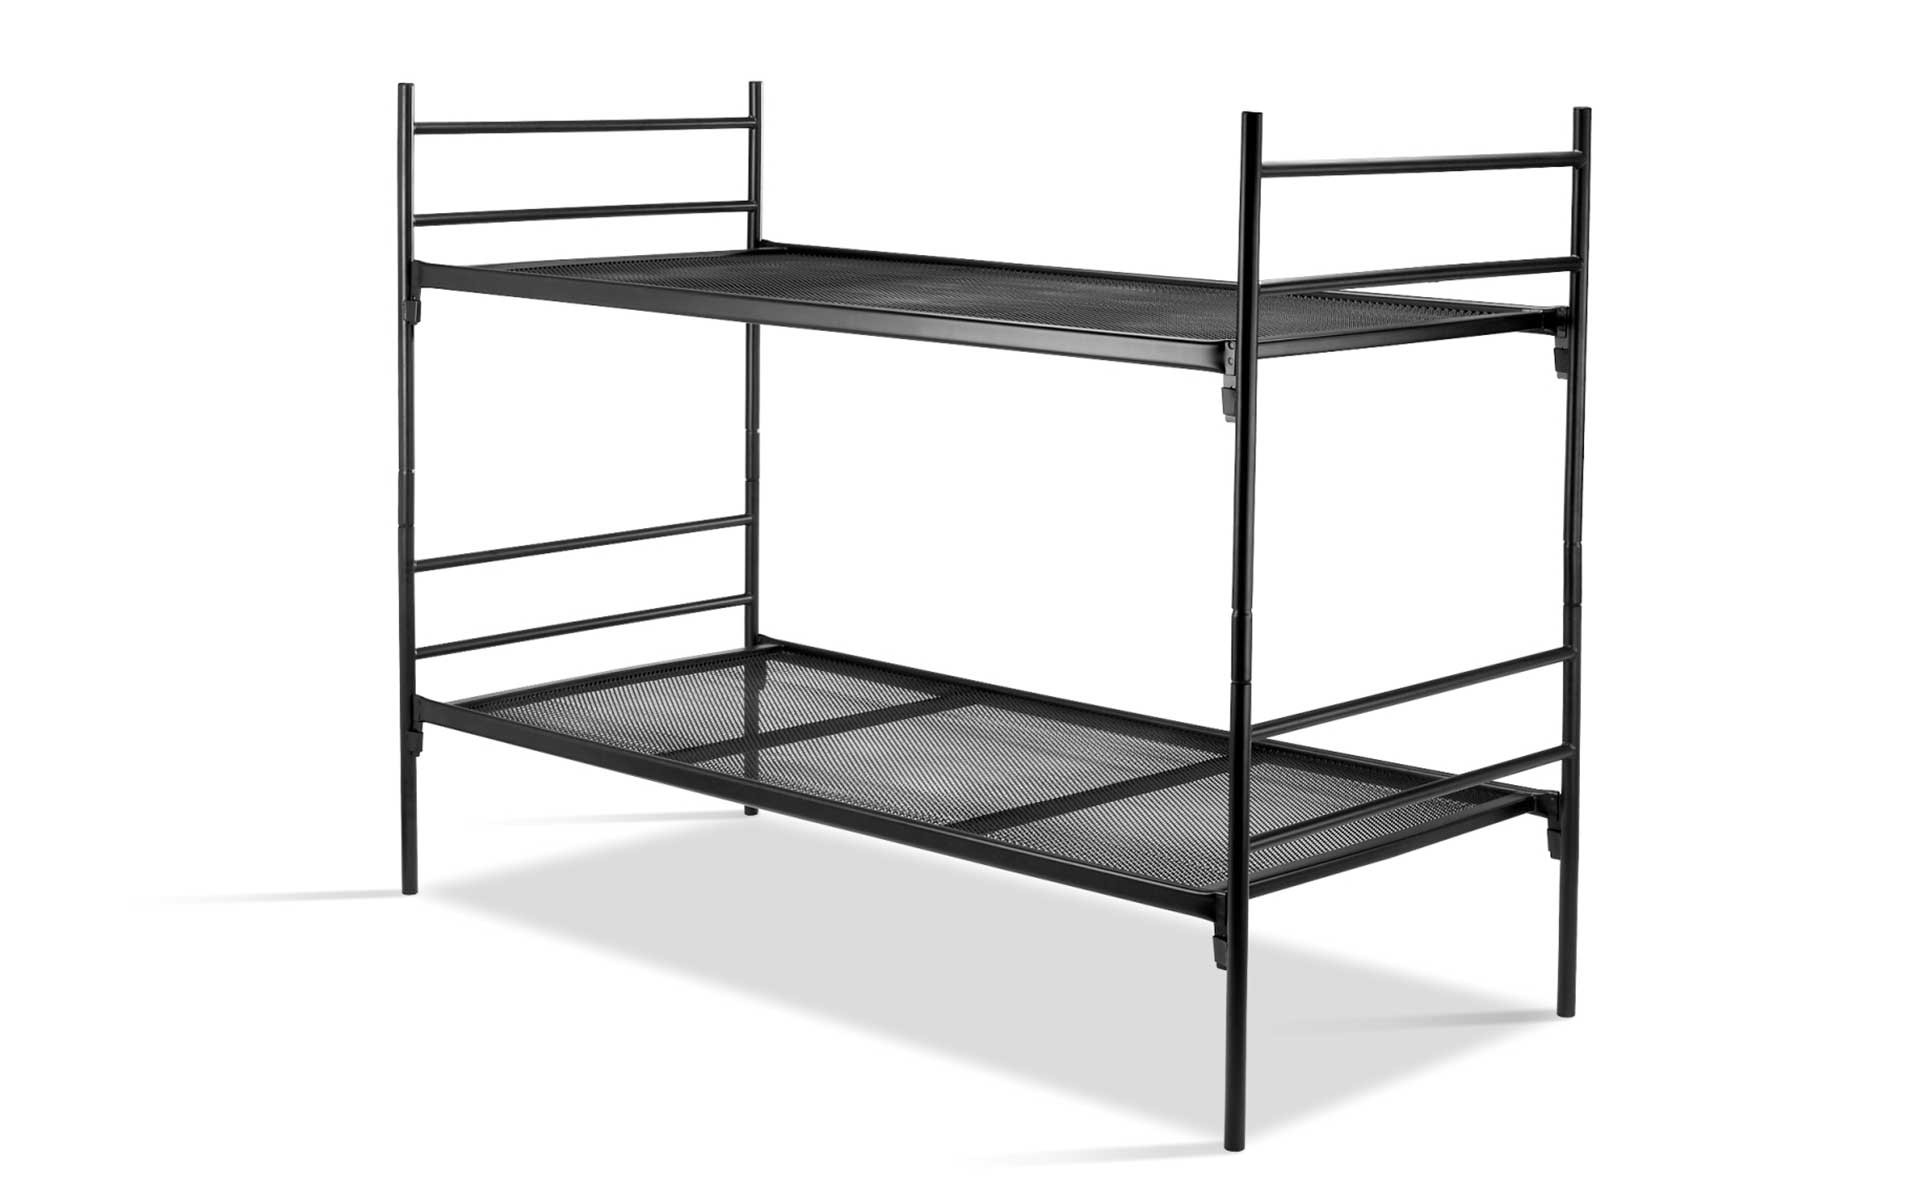 Rent a Bunk bed Divisible black? Rent at KeyPro furniture rental!